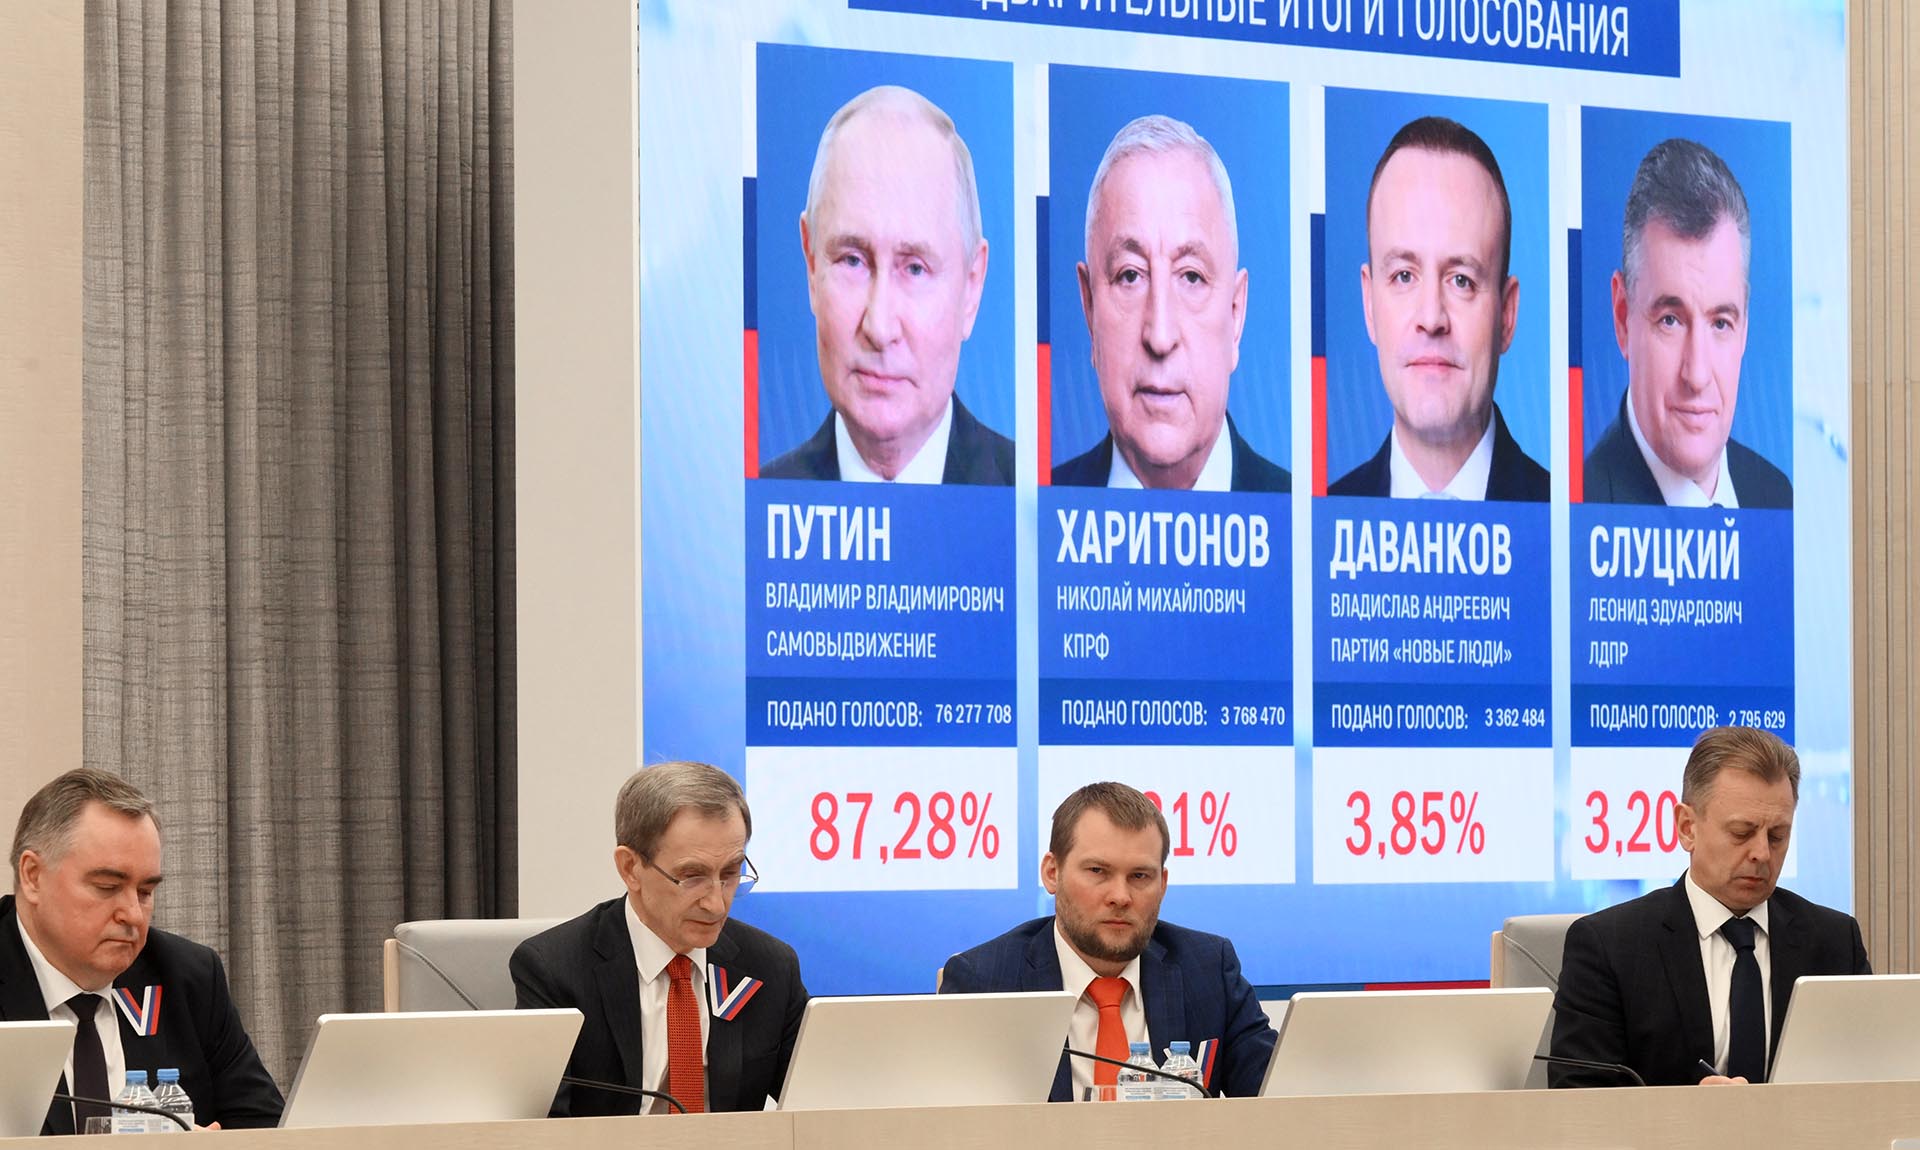 Заседание Центральной избирательной комиссии РФ по итогам голосования на выборах президента РФ